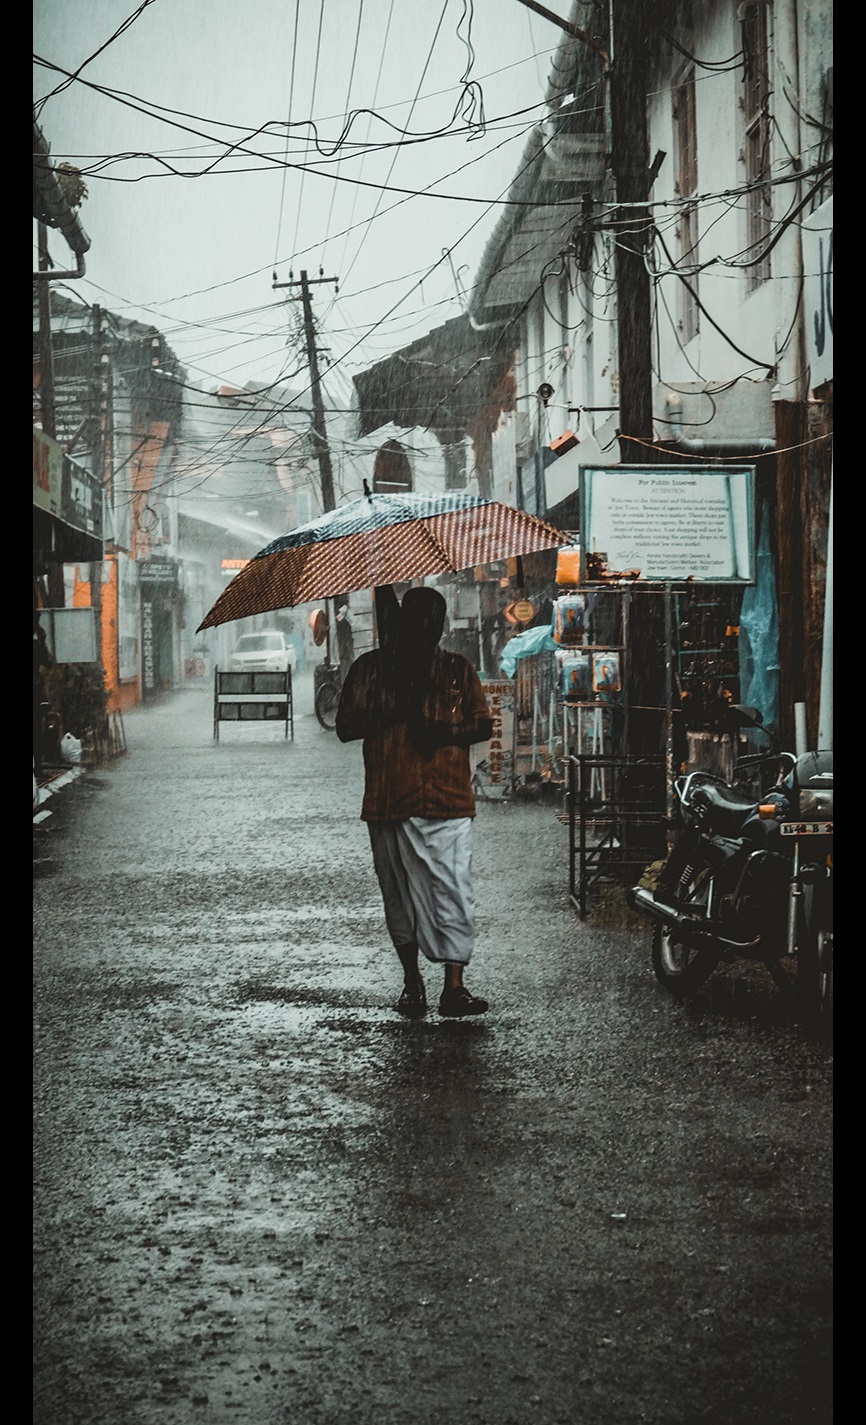 Man standing in a street under an umbrella in a rain storm 